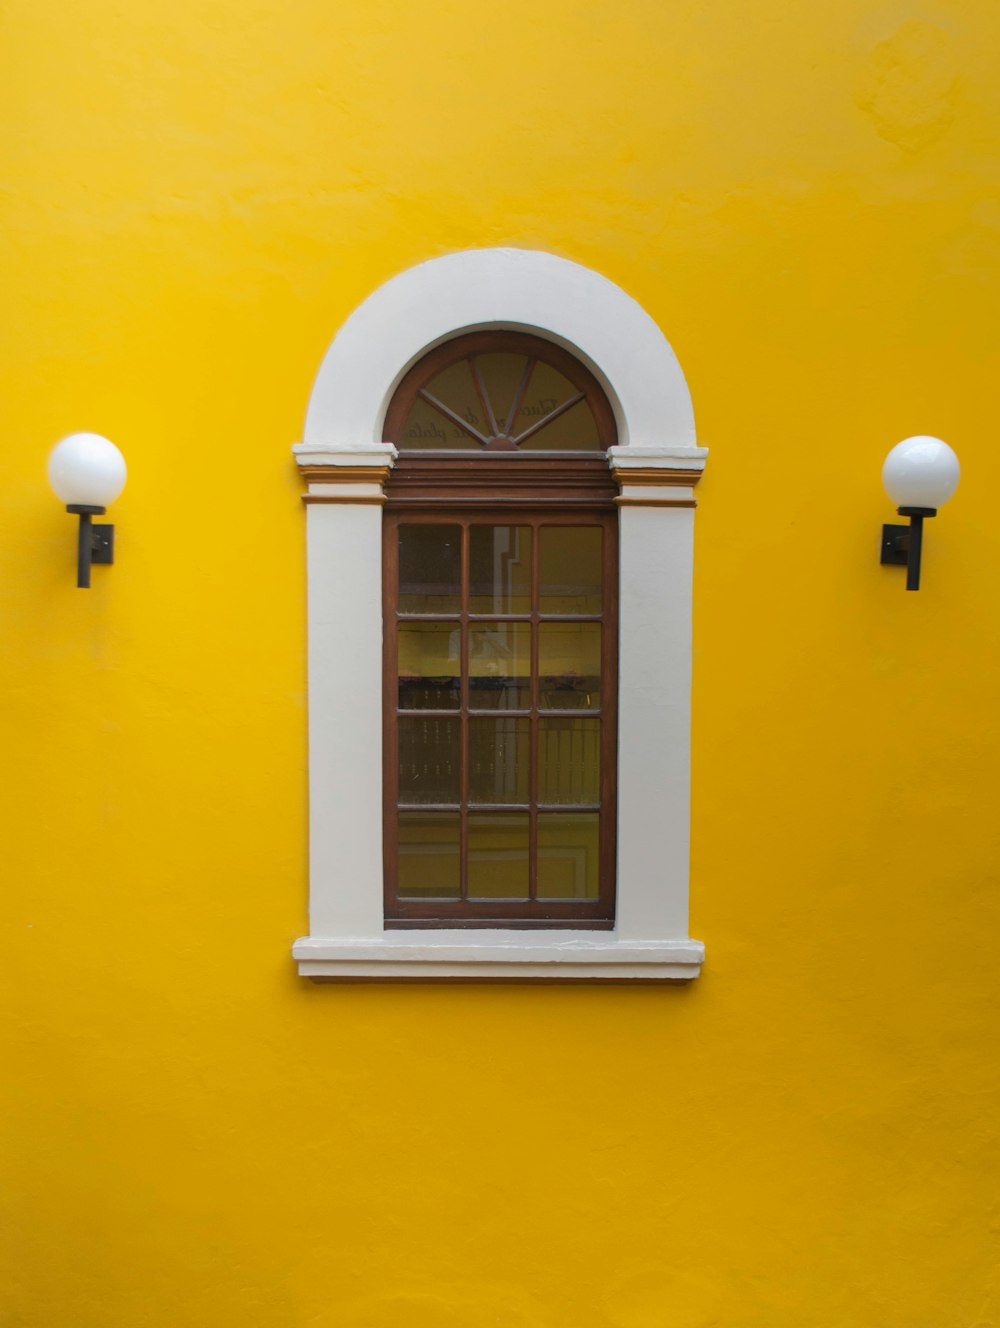 una finestra in un edificio giallo